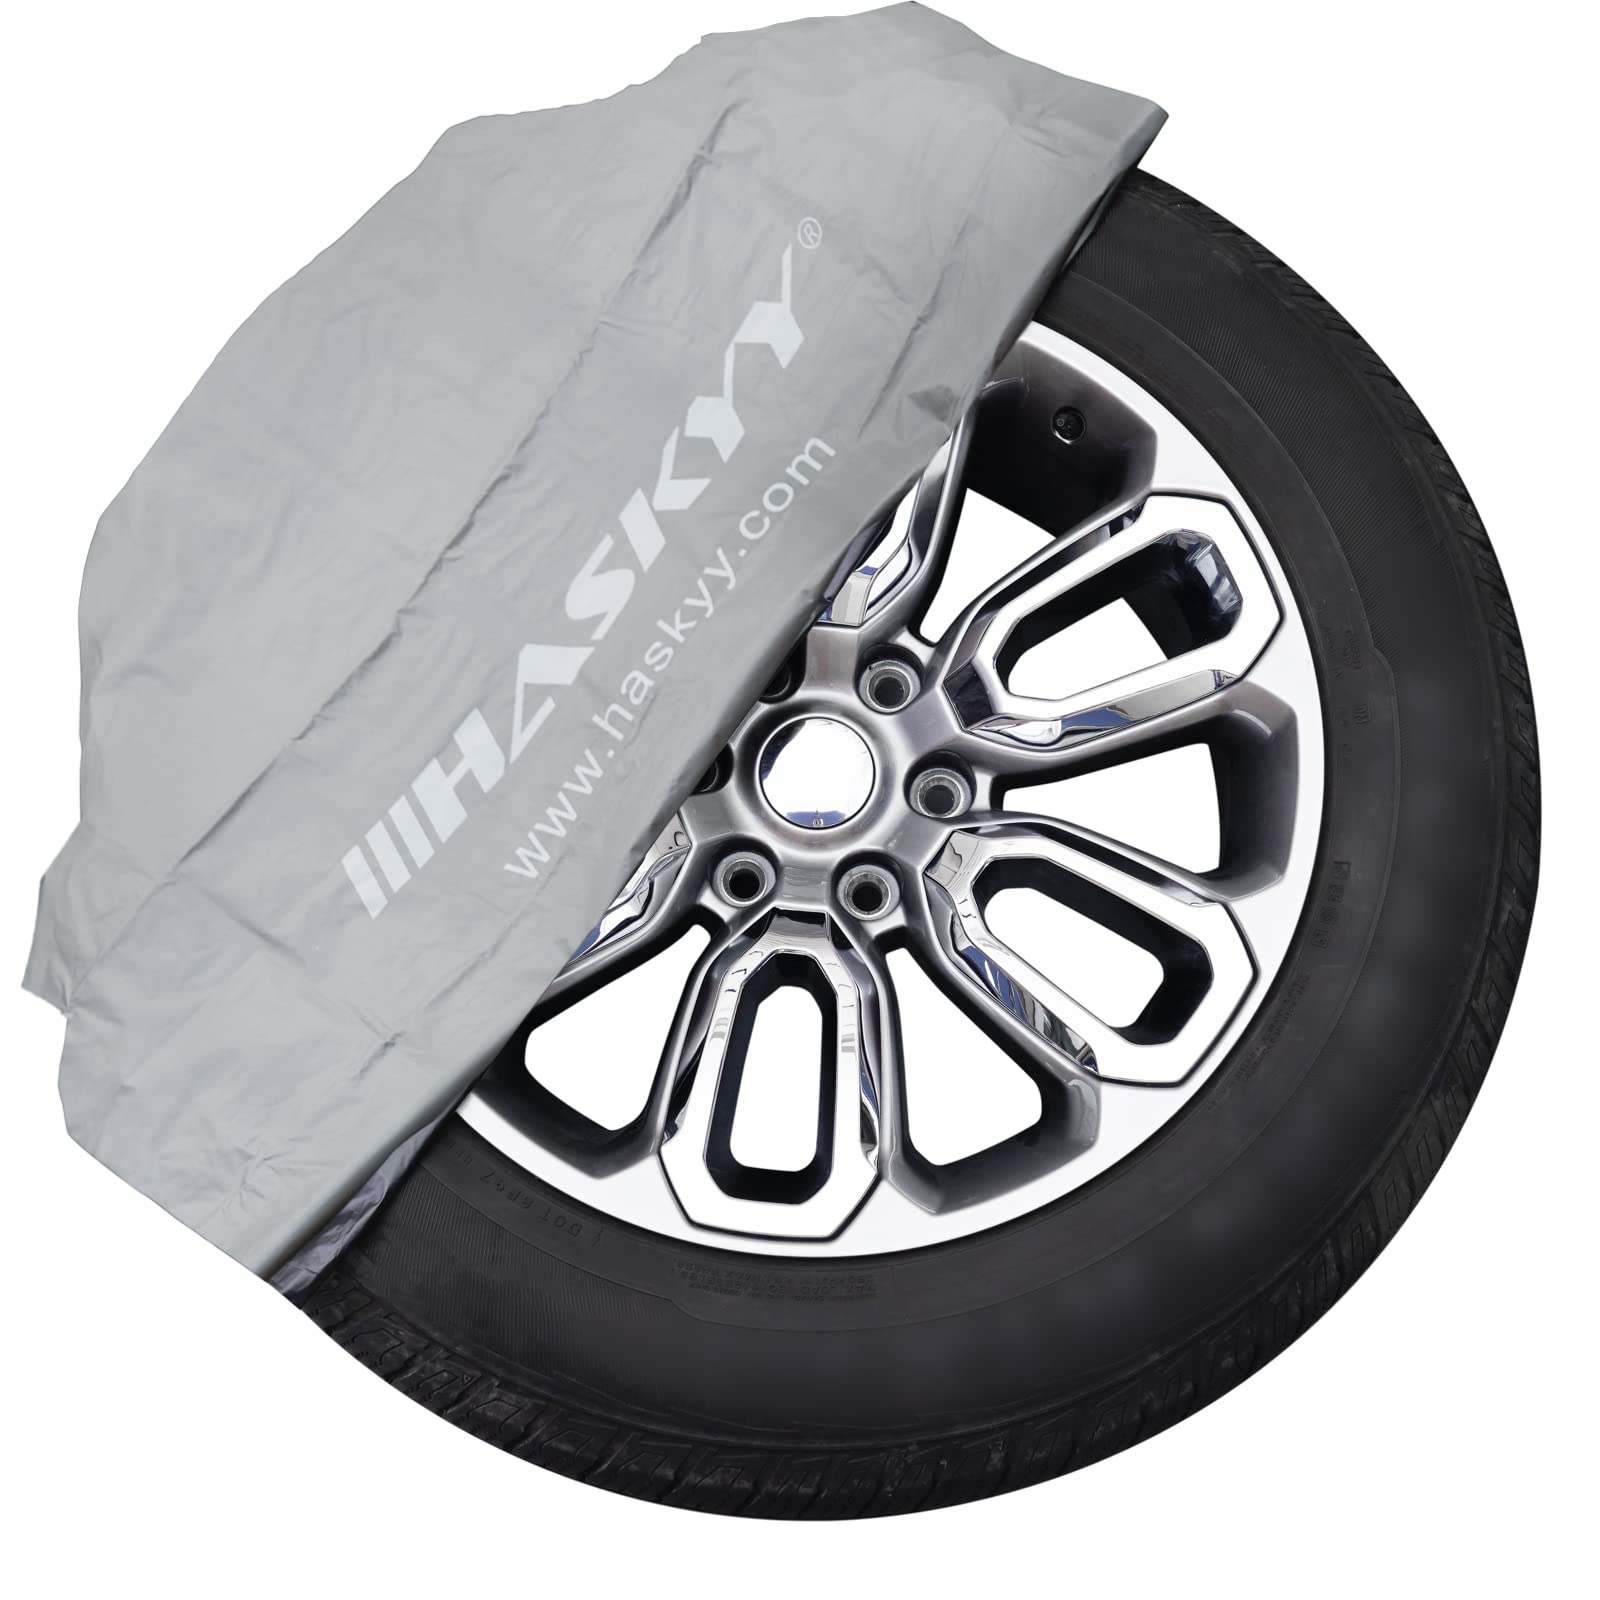 Haskyy Reifentaschen-Set Reifenschutzhülle 4-teilig für sauberen Transport - Premium Reifentüten Set zur Reifen Aufbewahrung und Lagerung - GRAU von Haskyy